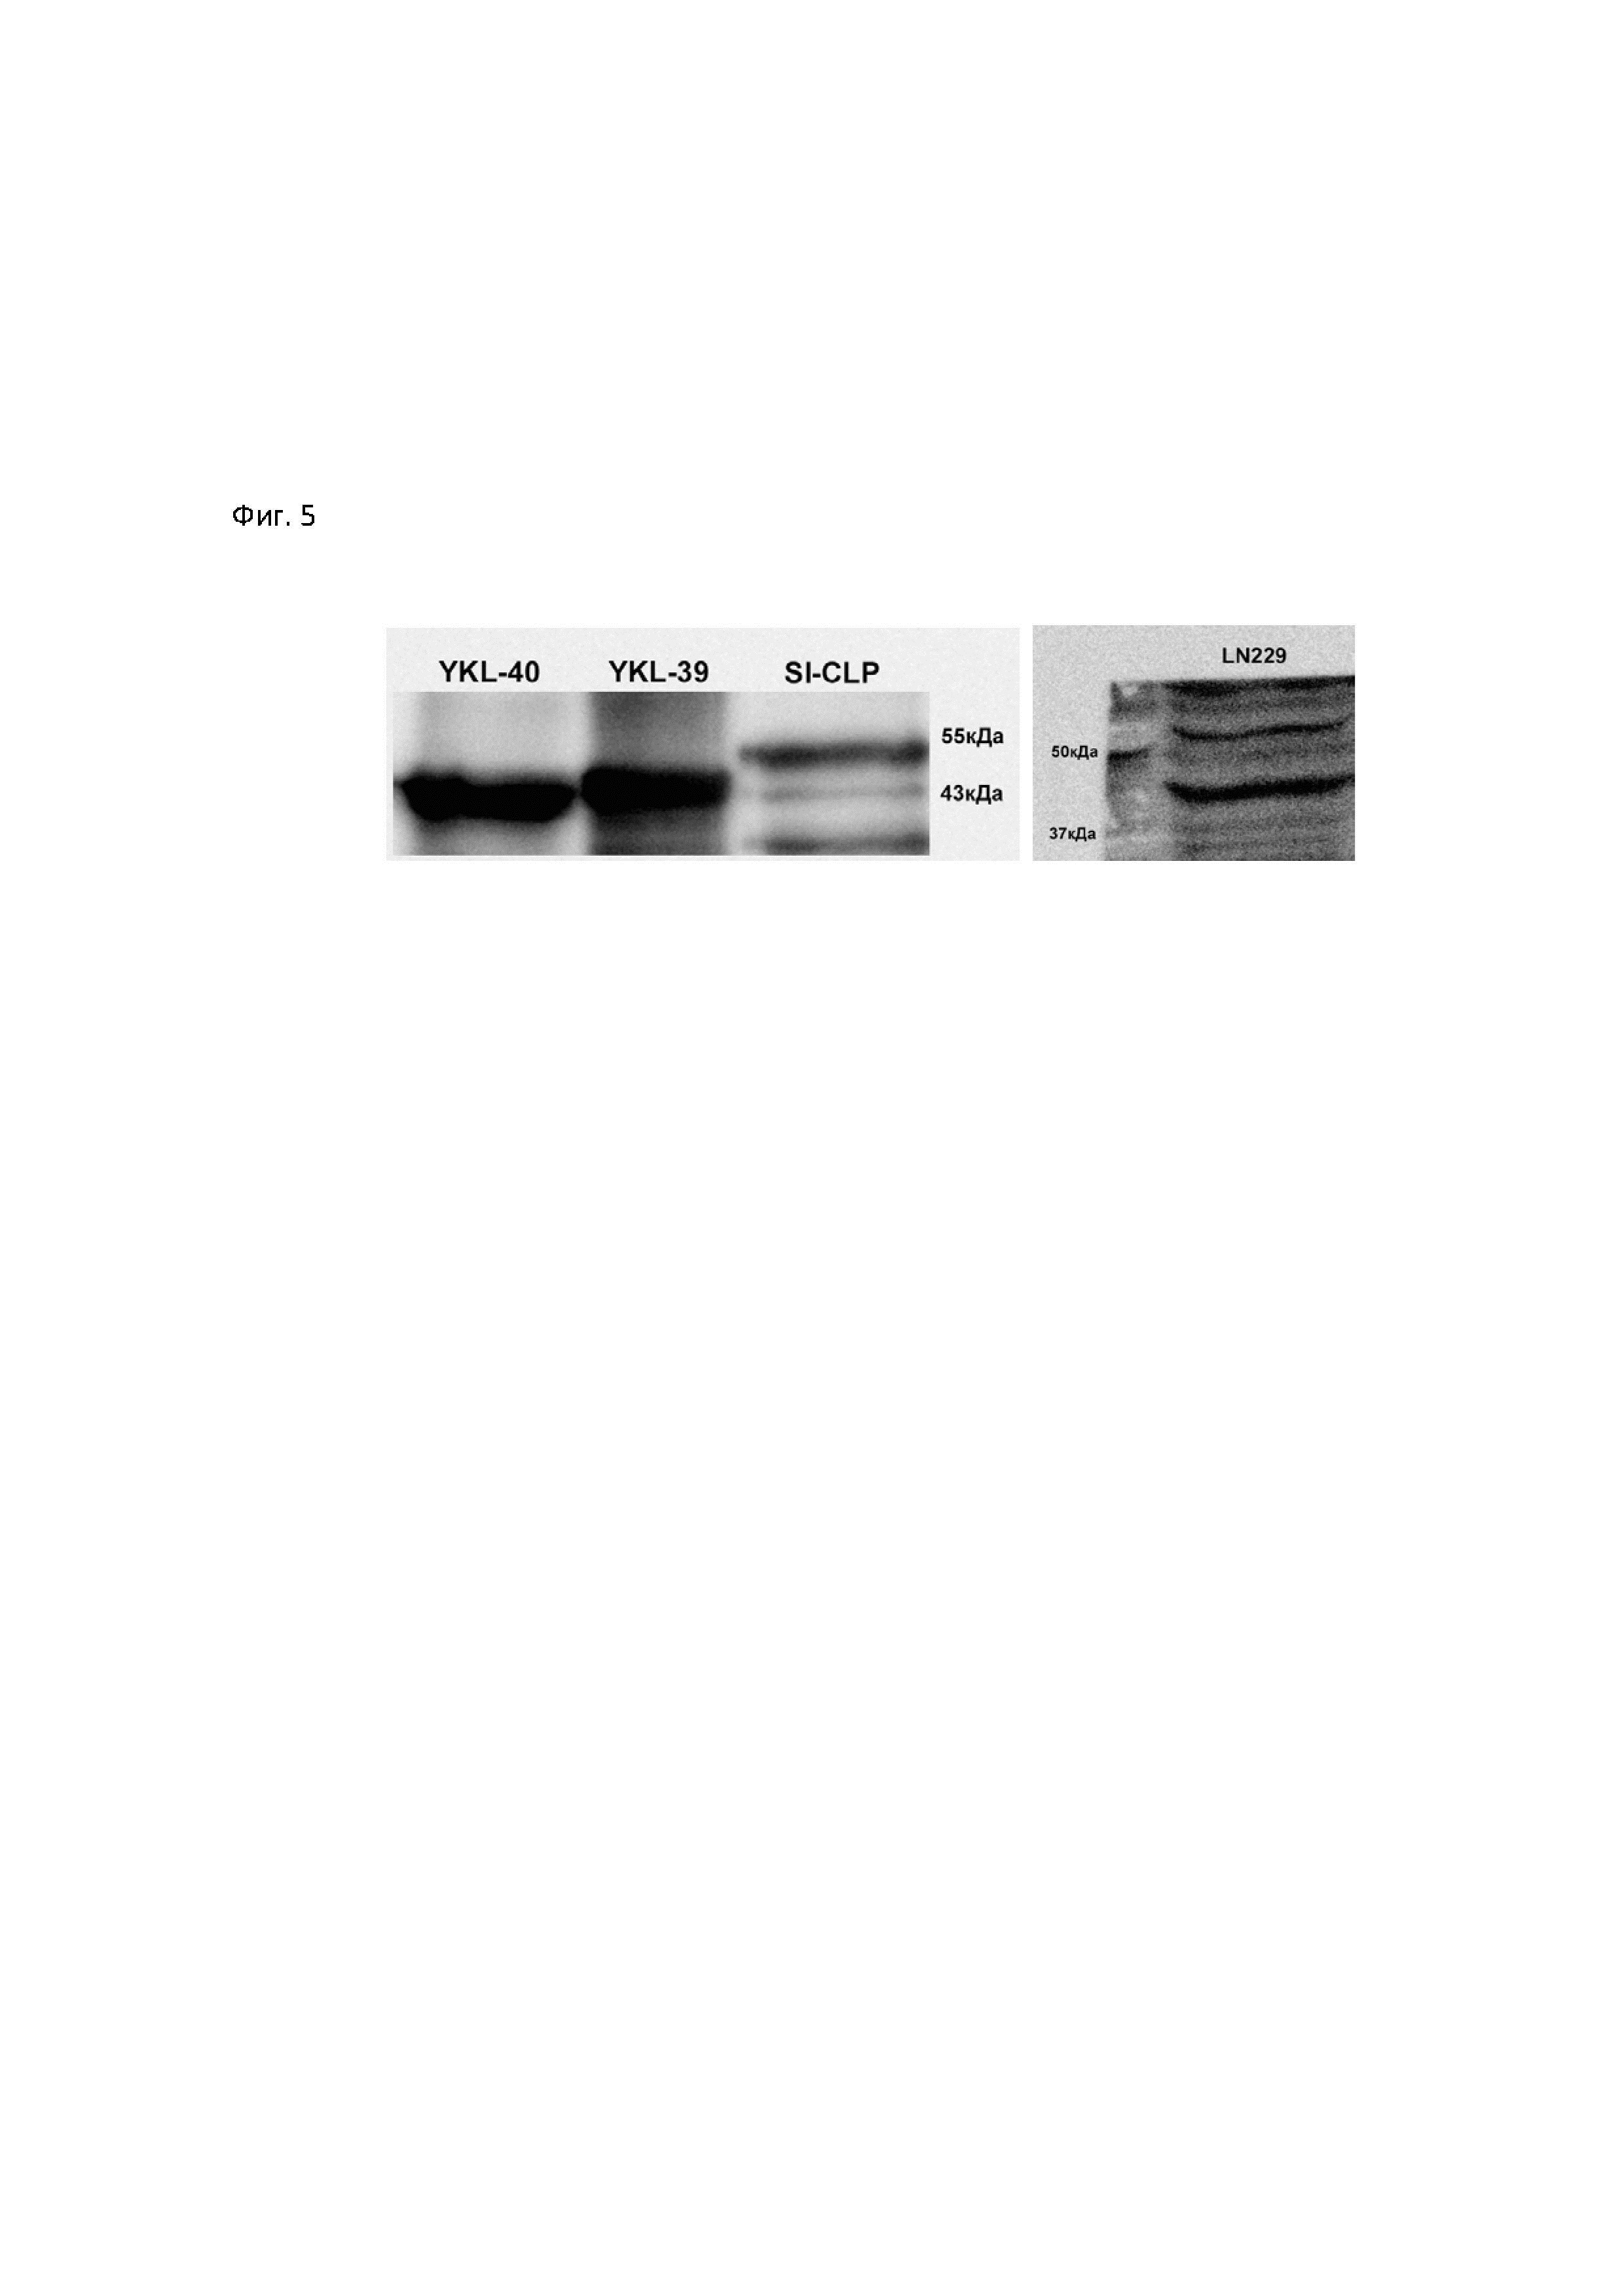 Мышиная гибридома YKL-40, клон 2G8 C10 - продуцент моноклонального антитела, обладающего специфичностью к цитоплазмотическим антигенам YKL-39, YKL-40 и SI-CLP человека